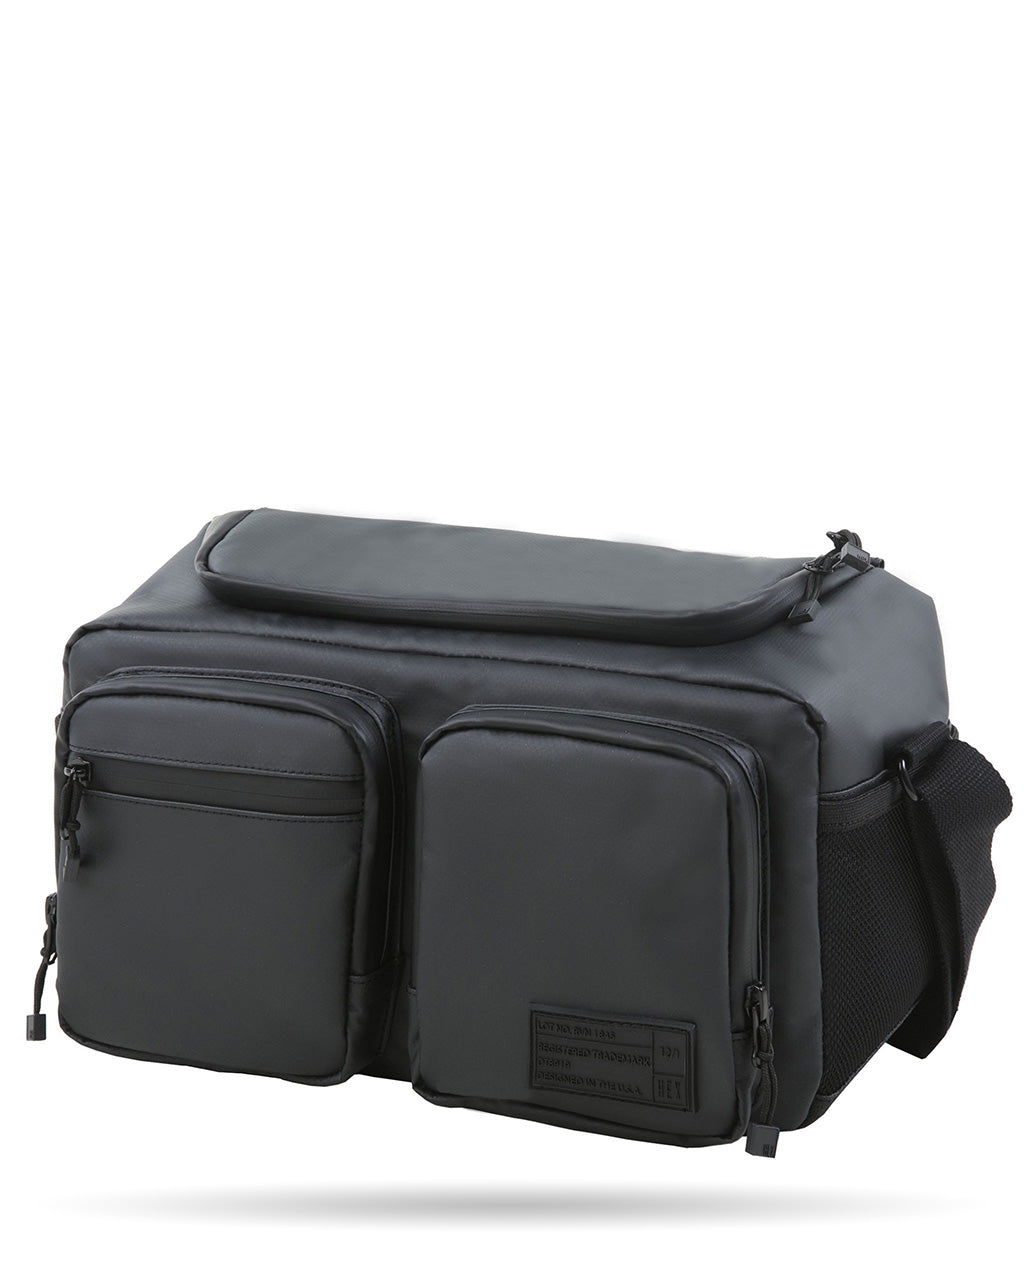 Waterproof Canvas Camera Bag Canvas DSLR Camera Shoulder Bag Vintage  Messenger Bag | EchoPurse